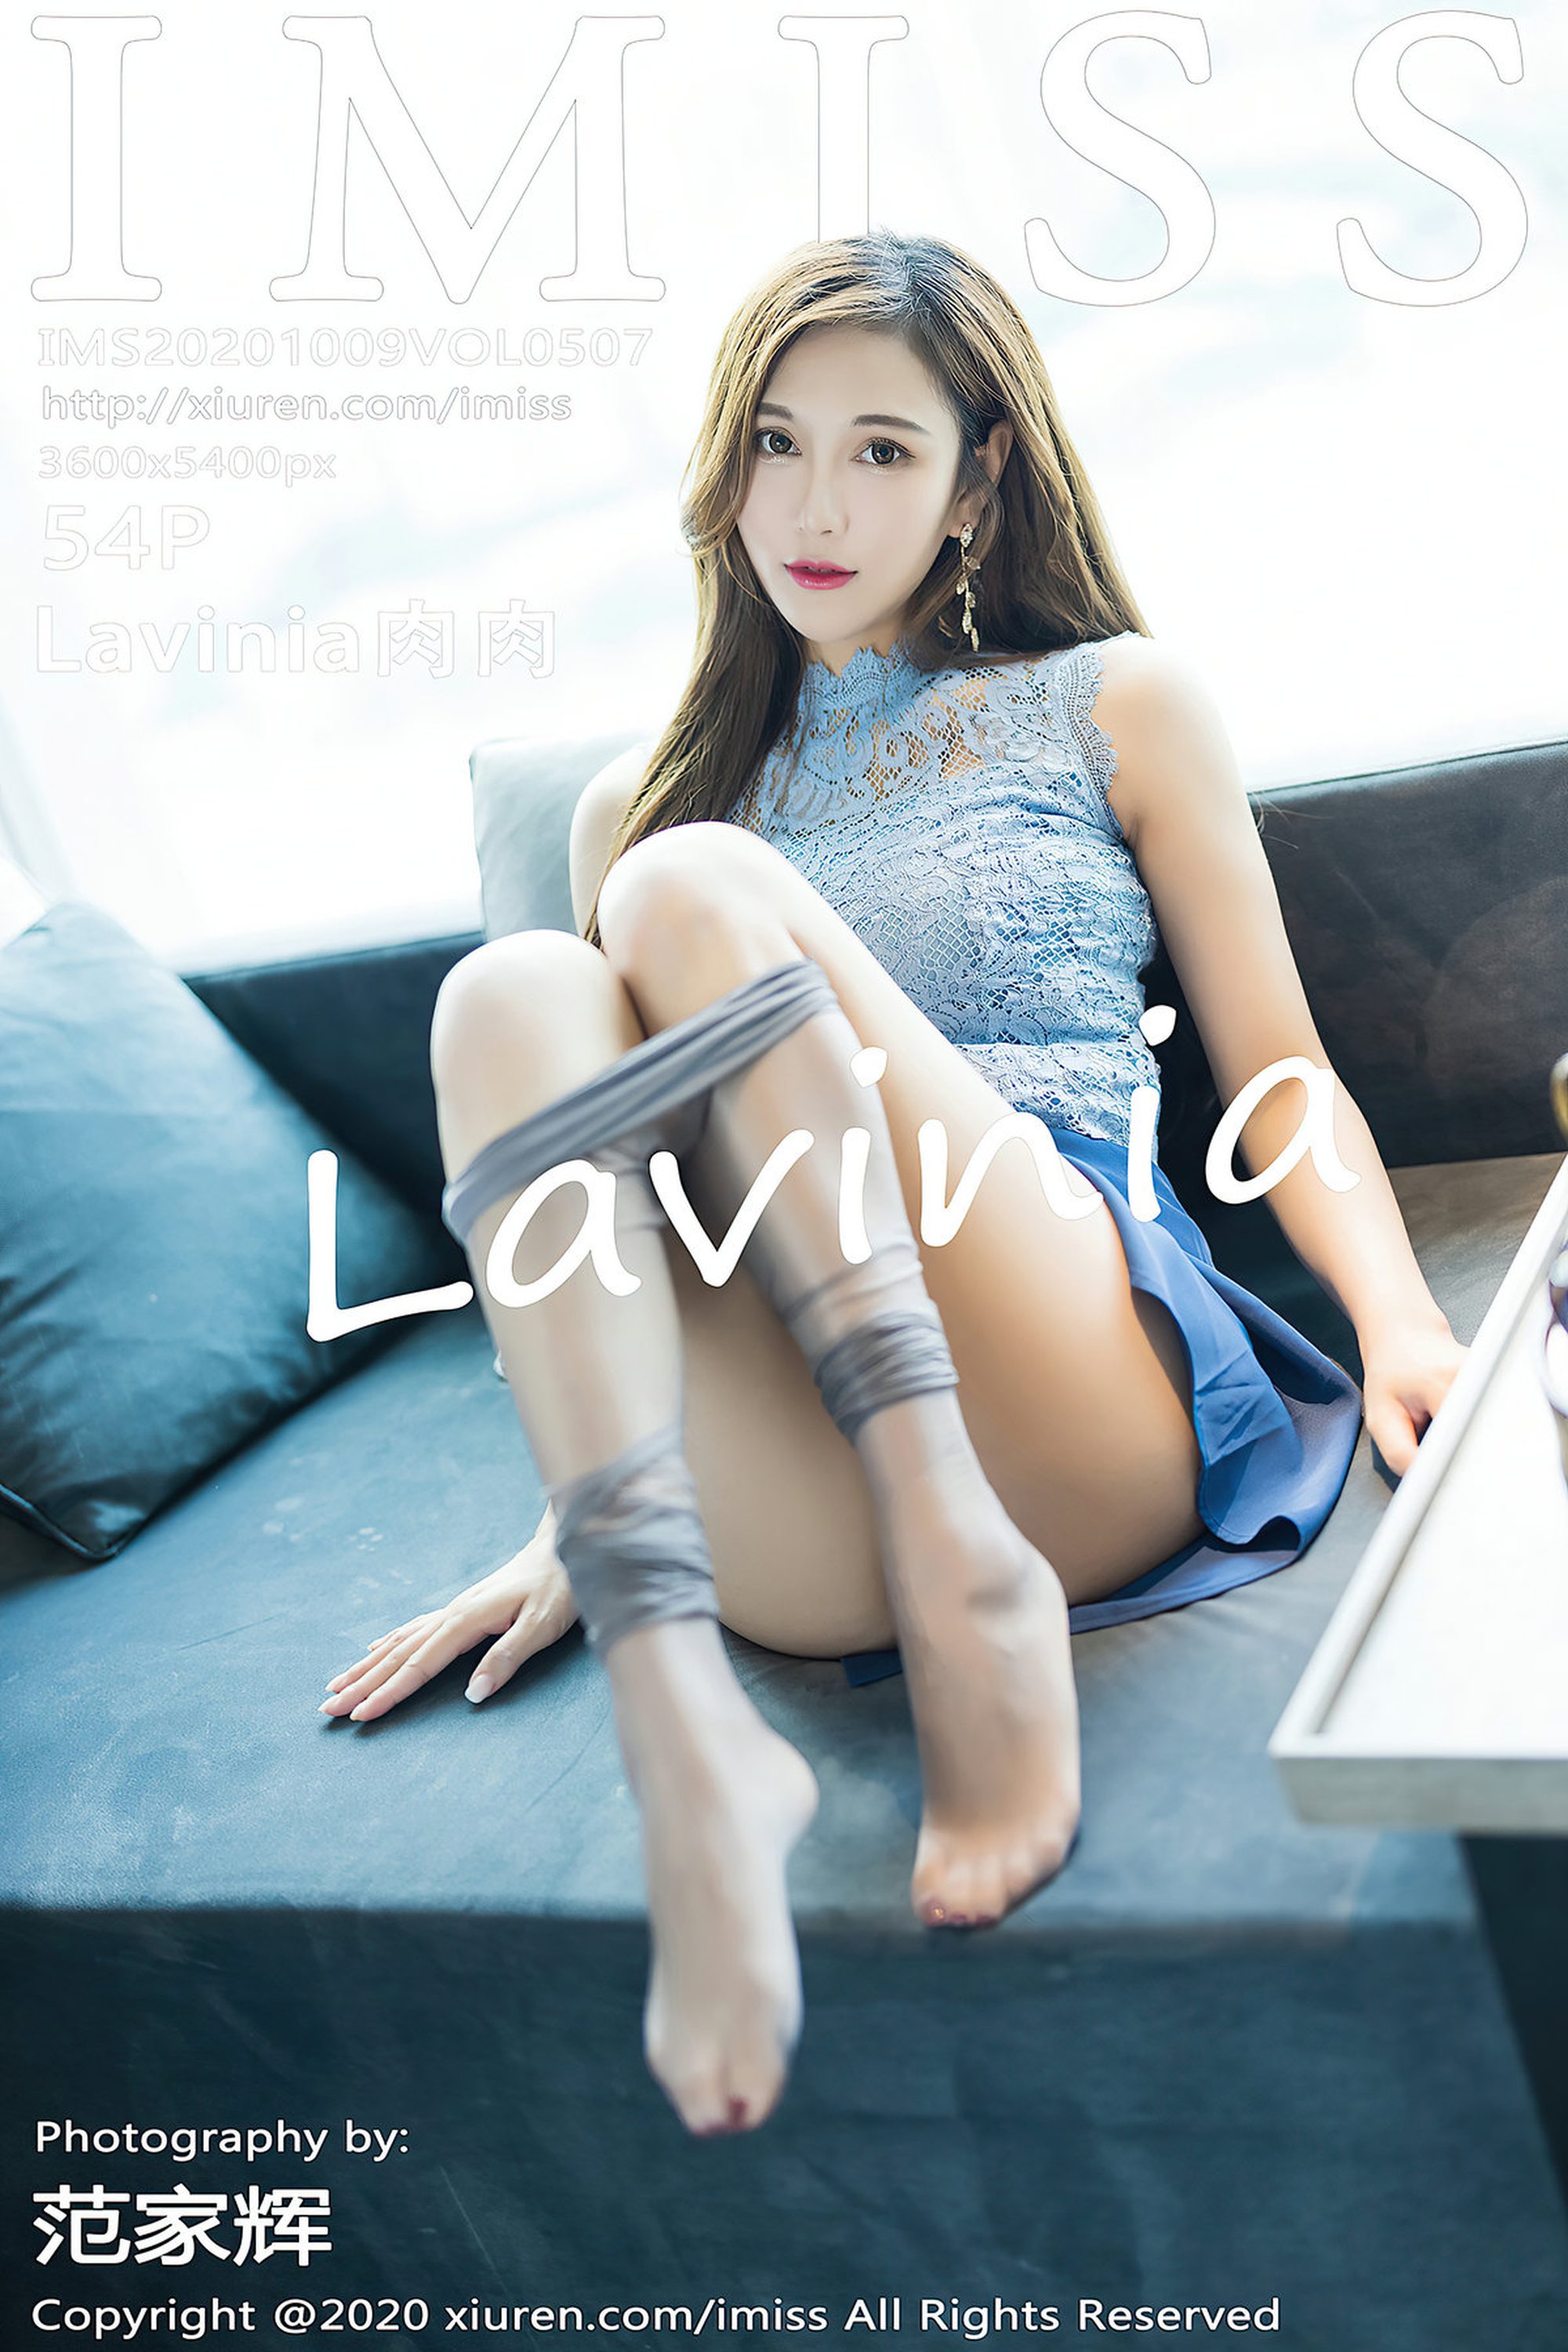 【IMiss愛蜜社系列】2020.10.09 Vol.507 Lavinia肉肉 完整版無水印寫真【55P】 - 貼圖 - 絲襪美腿 -